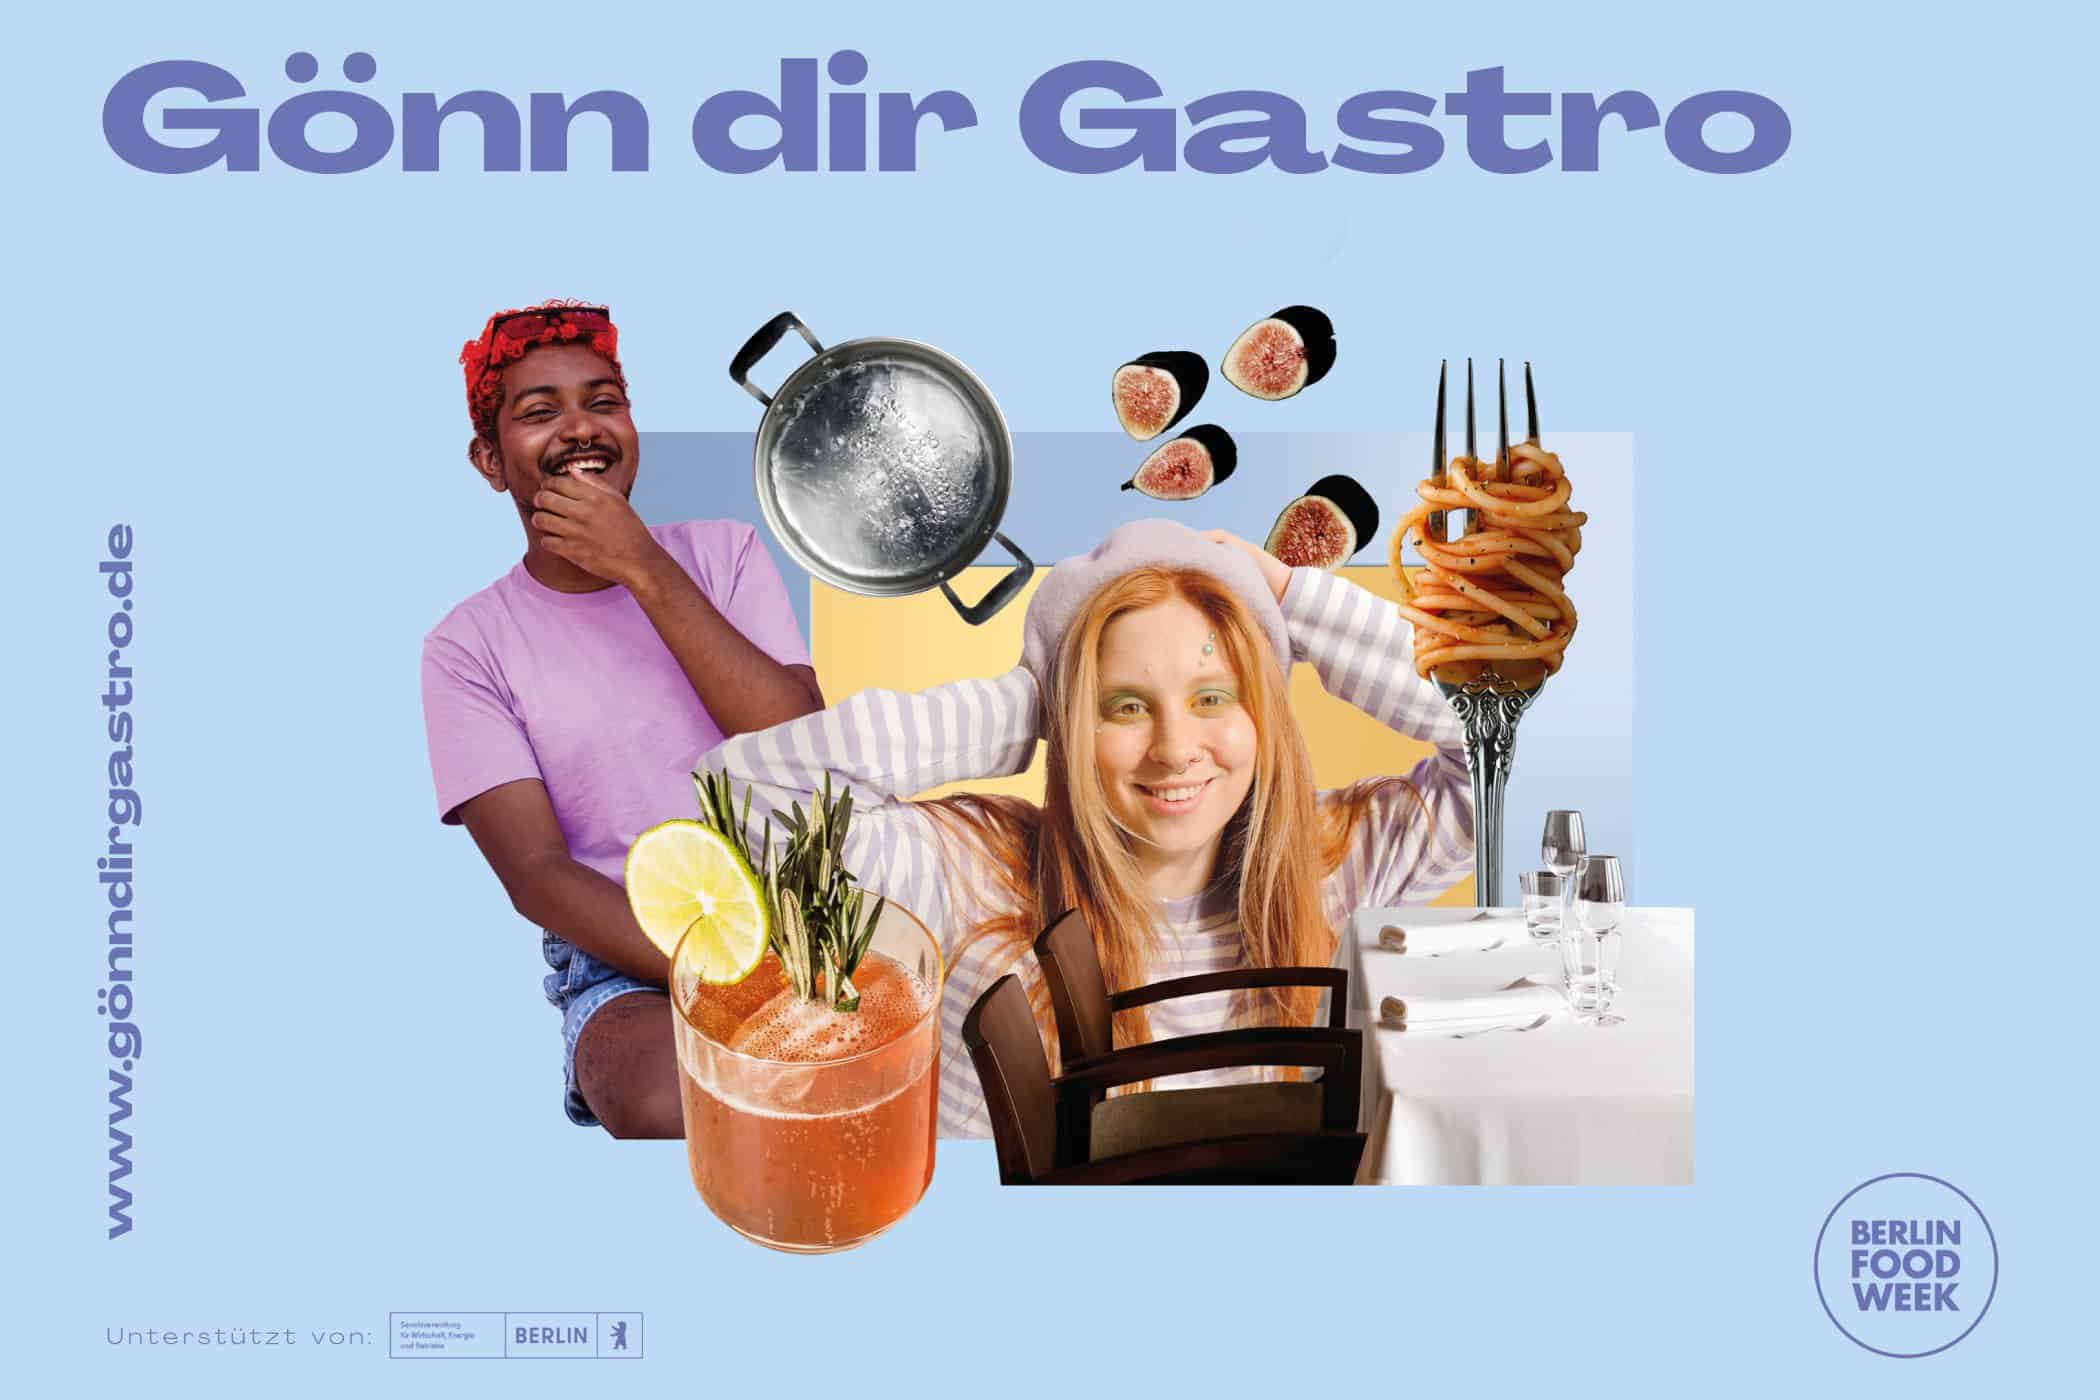 BFW23 GoenndirGastro 1 2 - personal, gastronomie, events Gönn dir Gastro 2023: Berliner Gastronomiebetriebe geben jungen Menschen Branchen-Einblicke